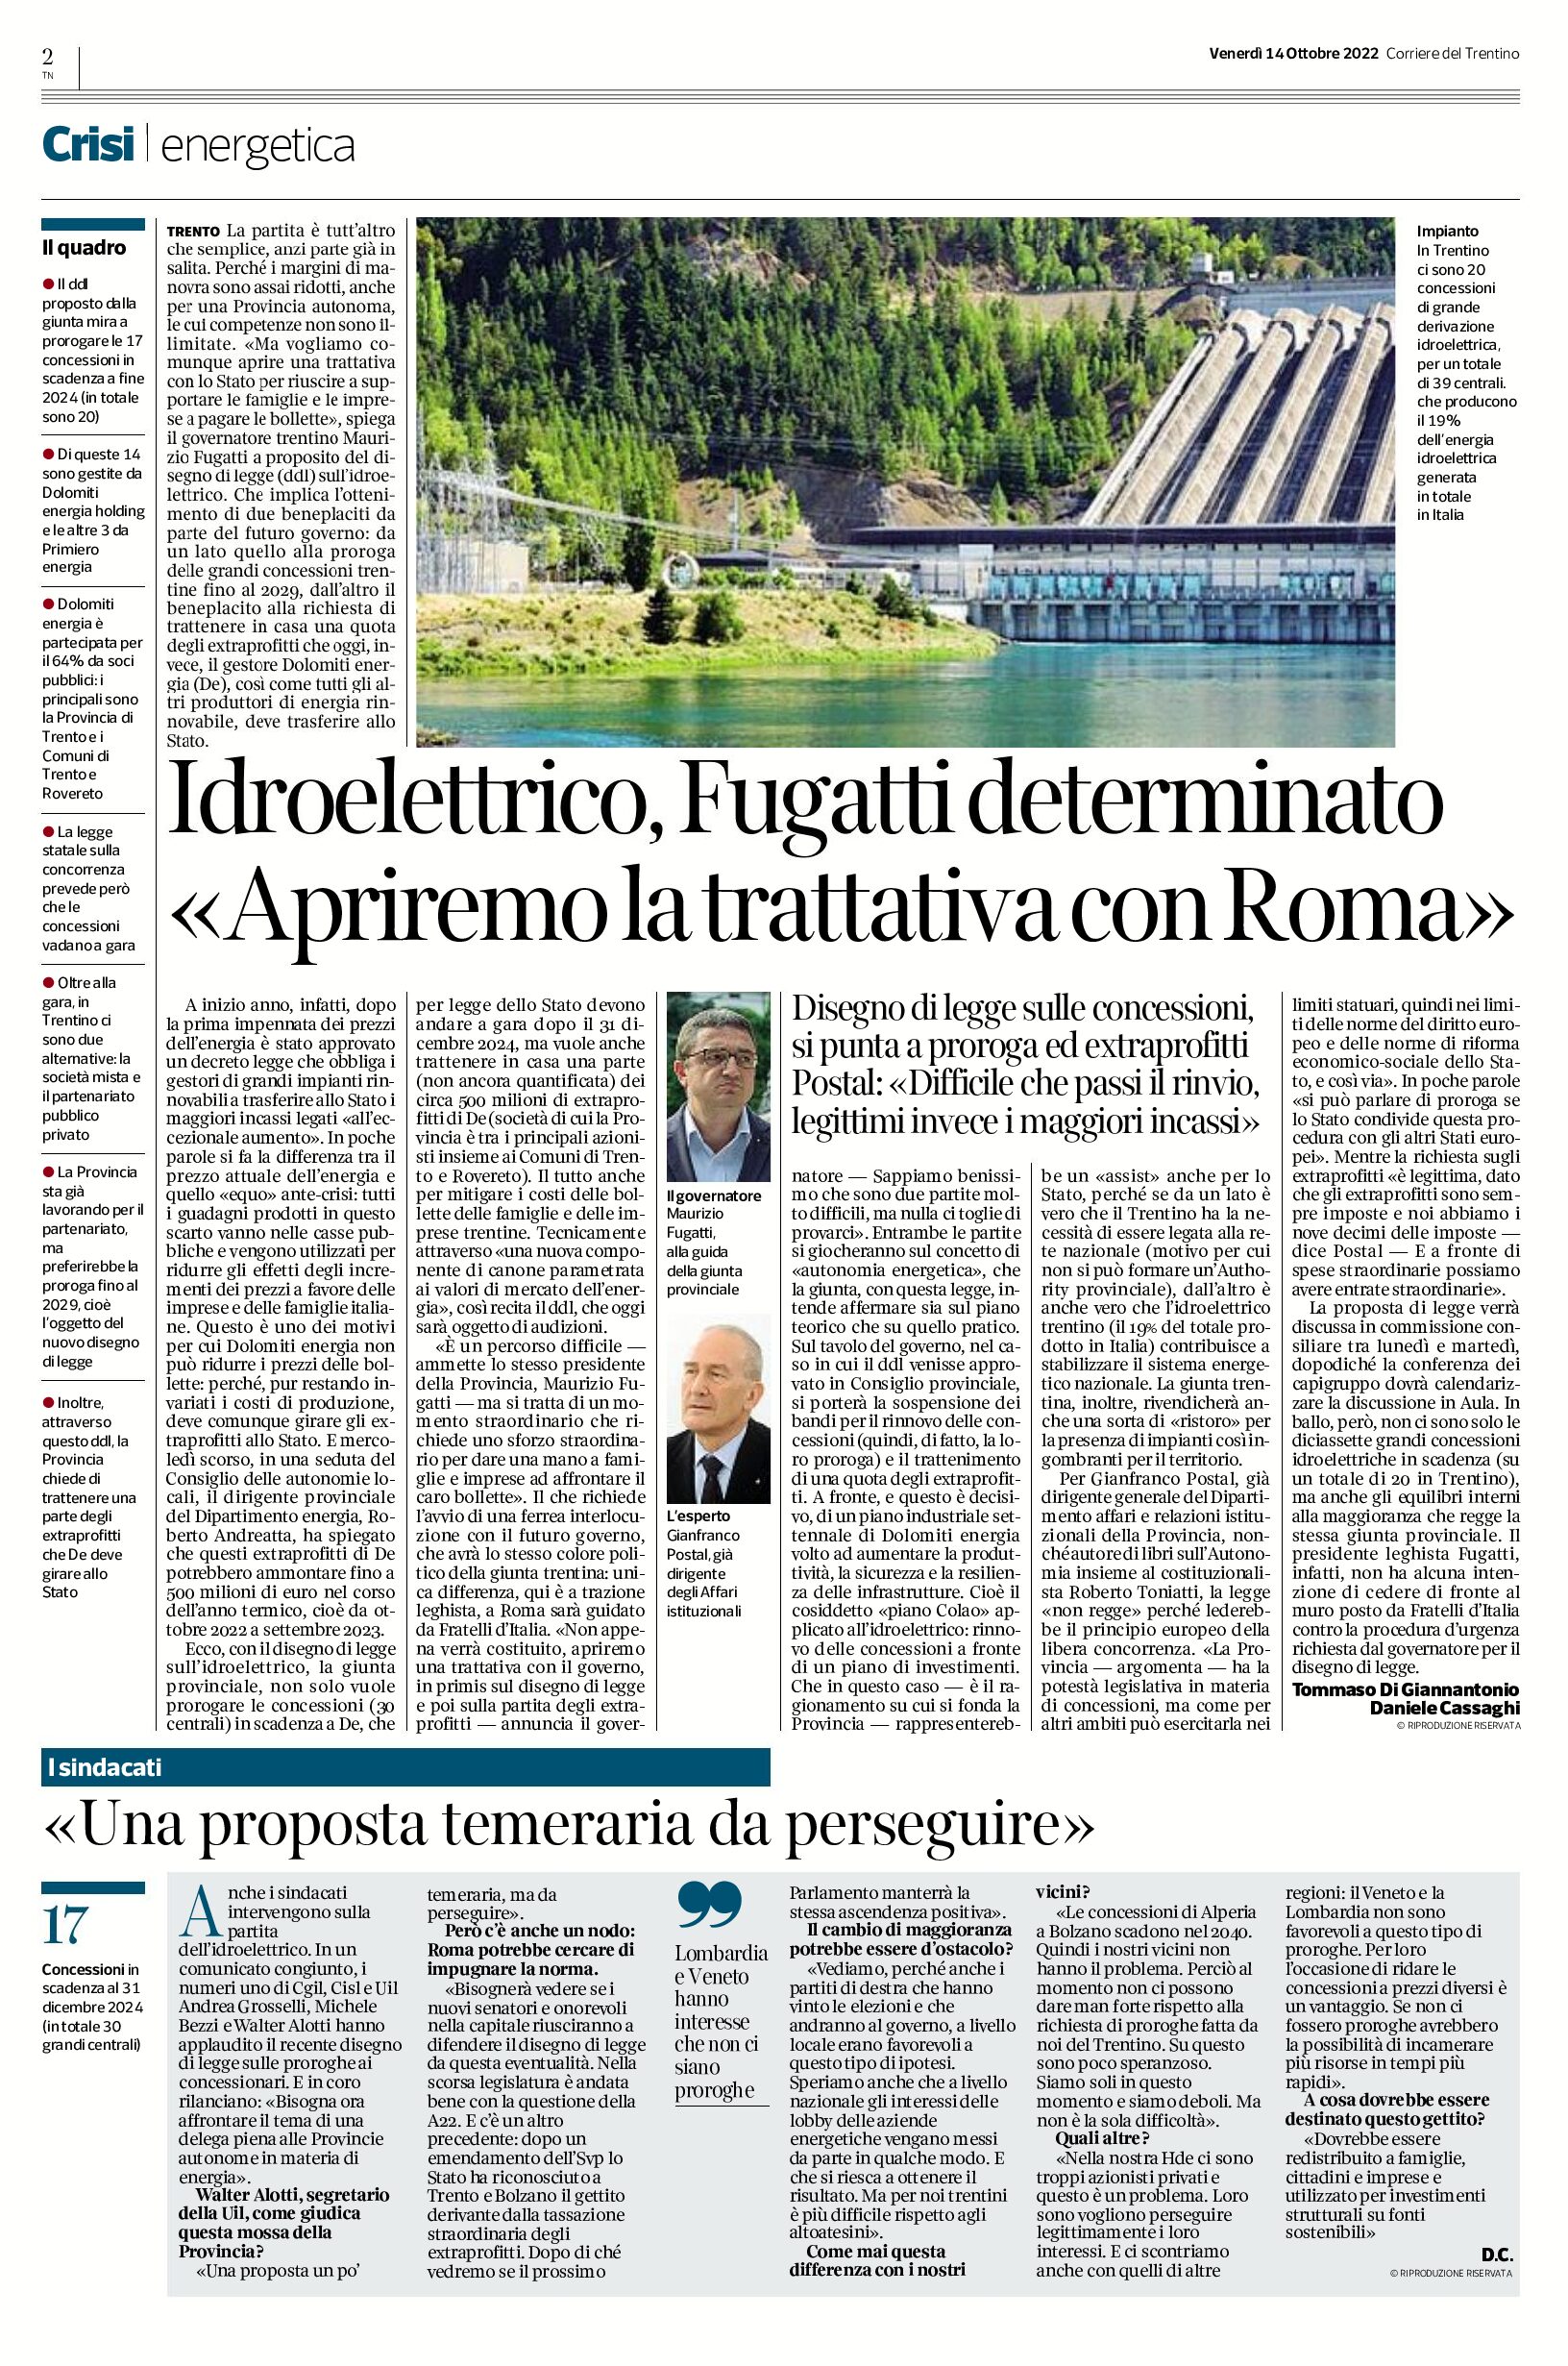 Idroelettrico: Fugatti determinato “apriremo la trattativa con Roma”